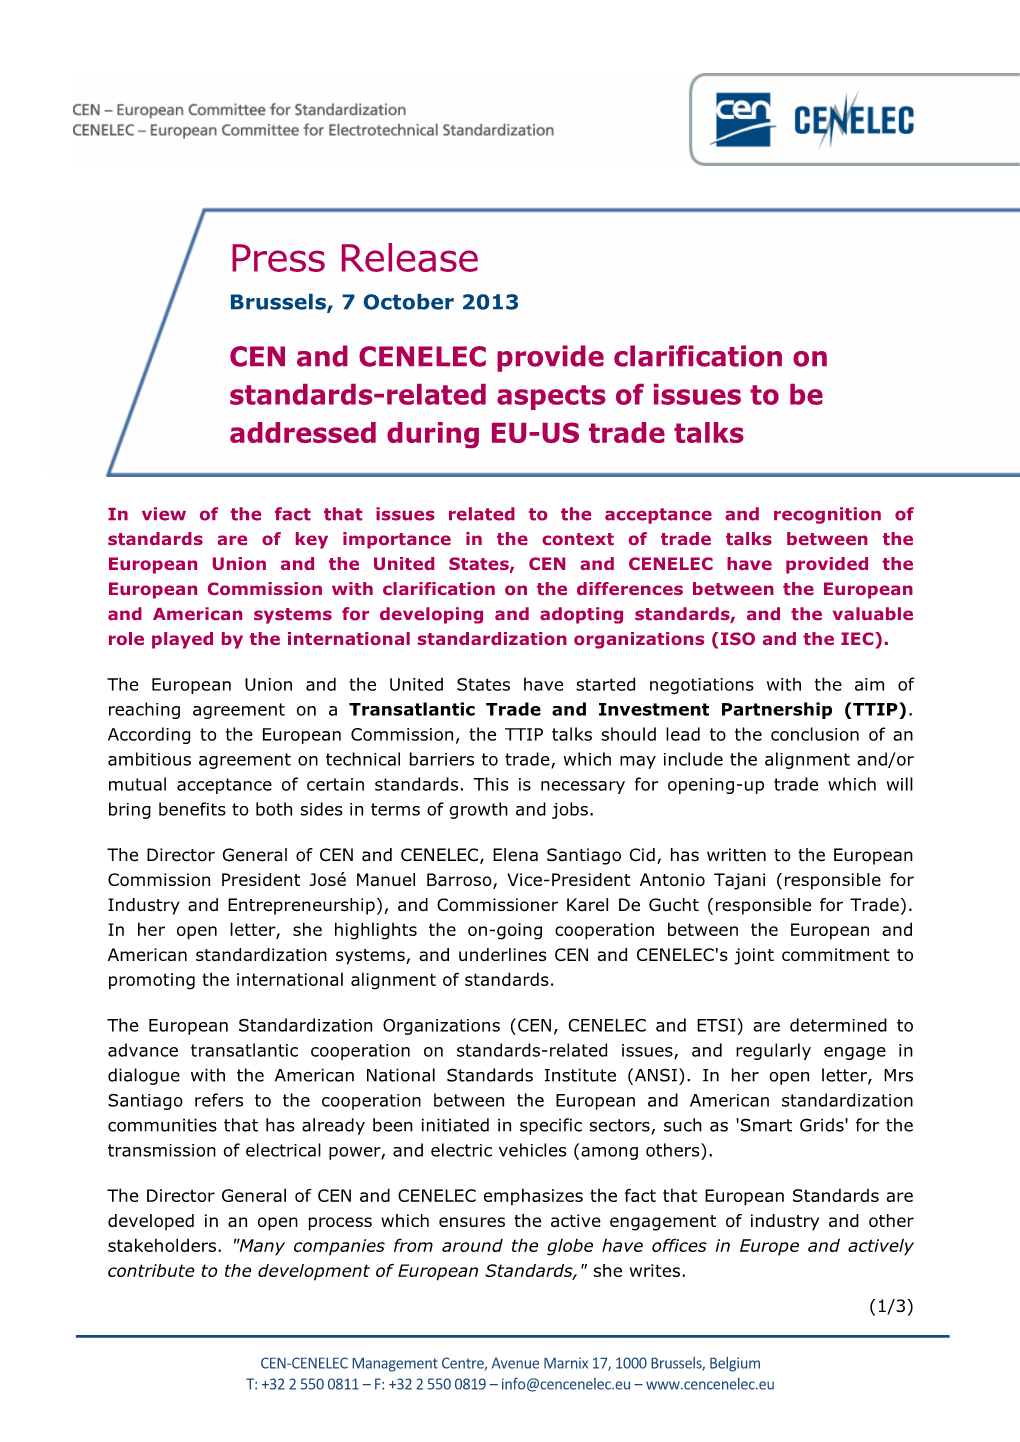 Press Release Brussels, 7 October 2013